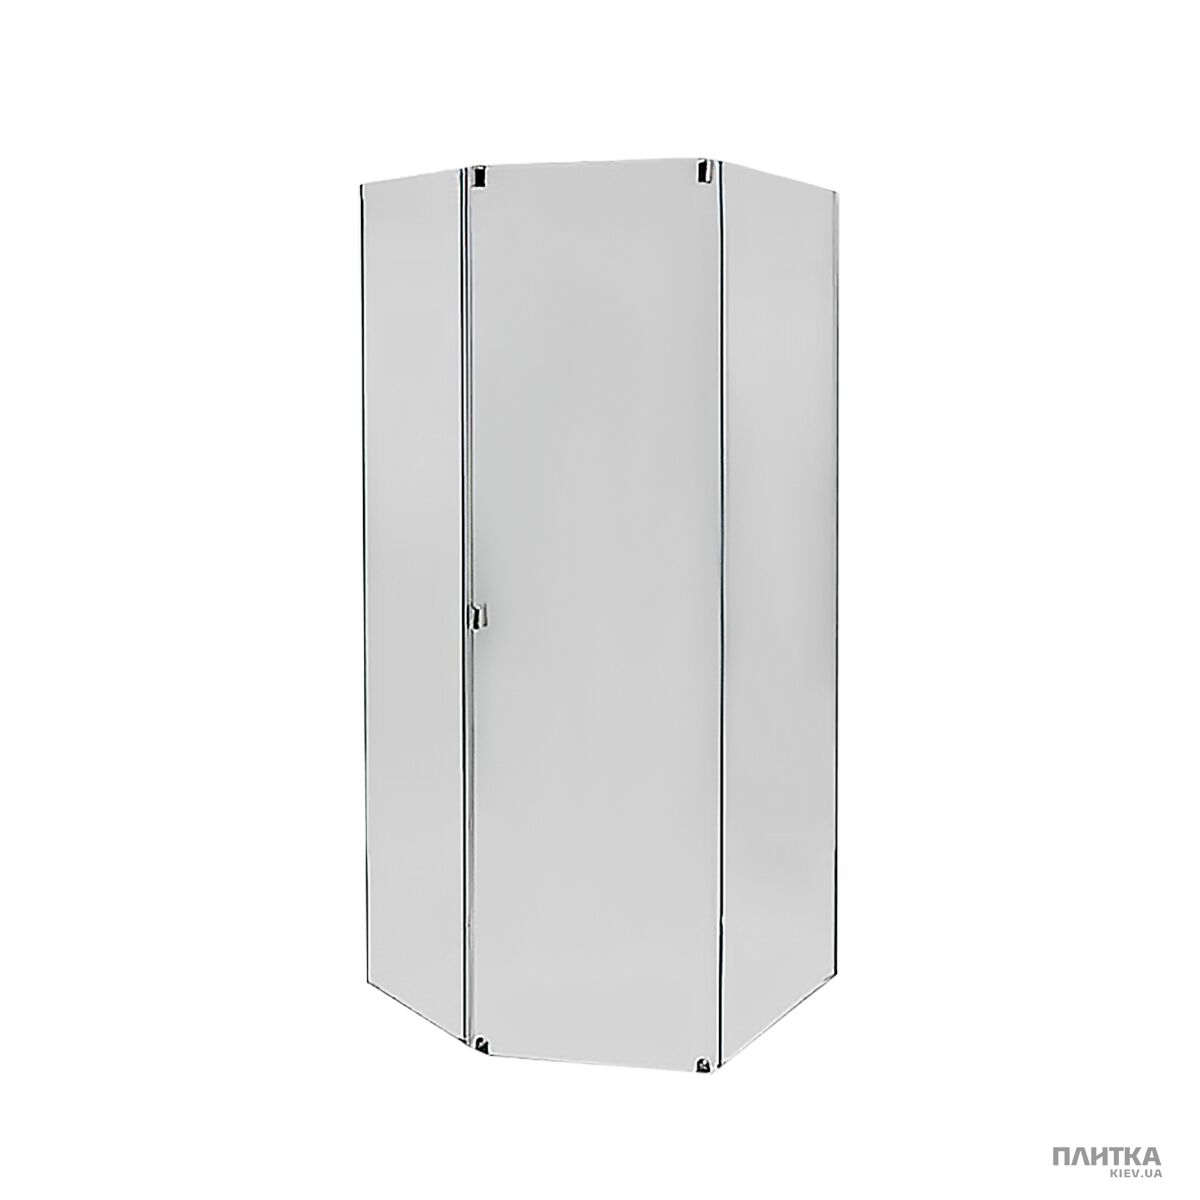 Комплектуючі: IDO Showerama 8-5 4985023995 Передні стінки та двері душової кабіни, фронтальна панель біла білий,скло тоноване